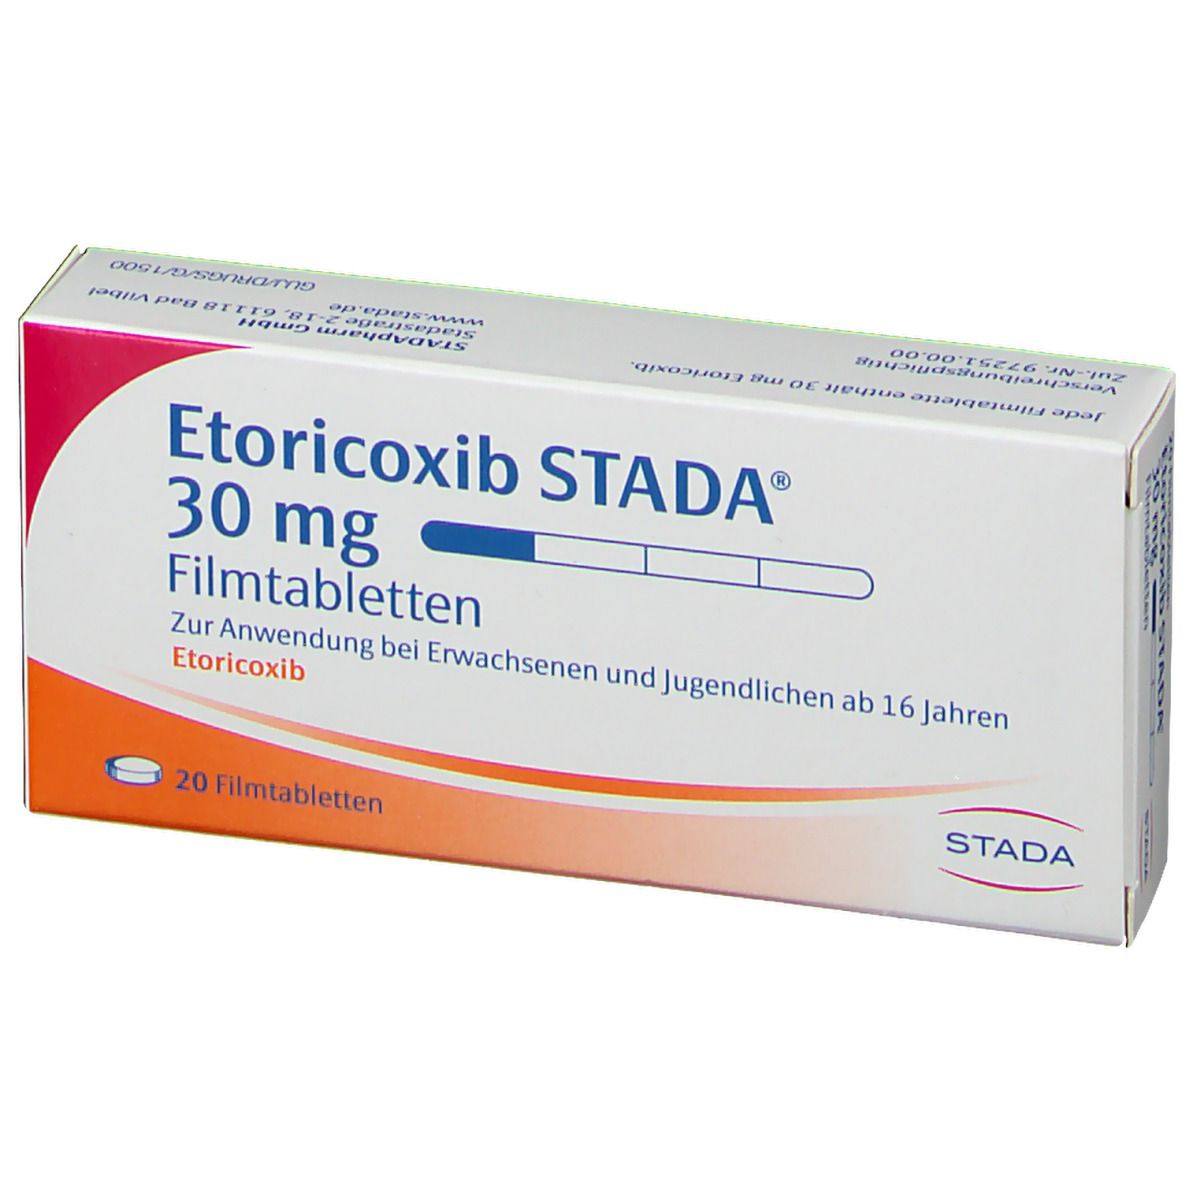 Etoricoxib STADA® 30 mg